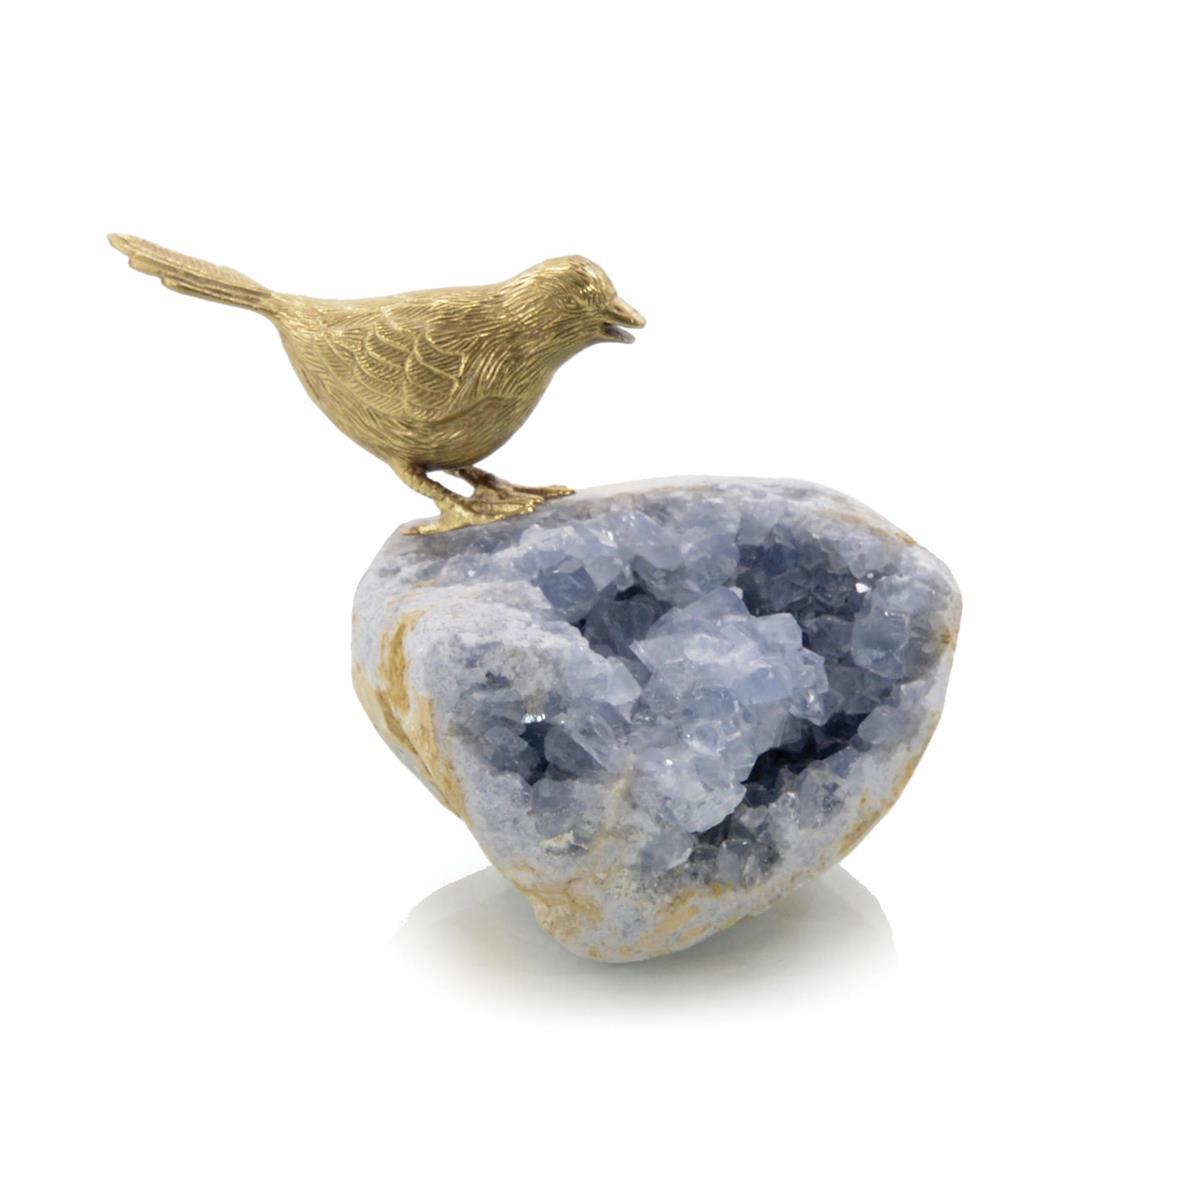 Bird on Celestite Rock I-John Richard-Sculptures & Objects-Artistic Elements